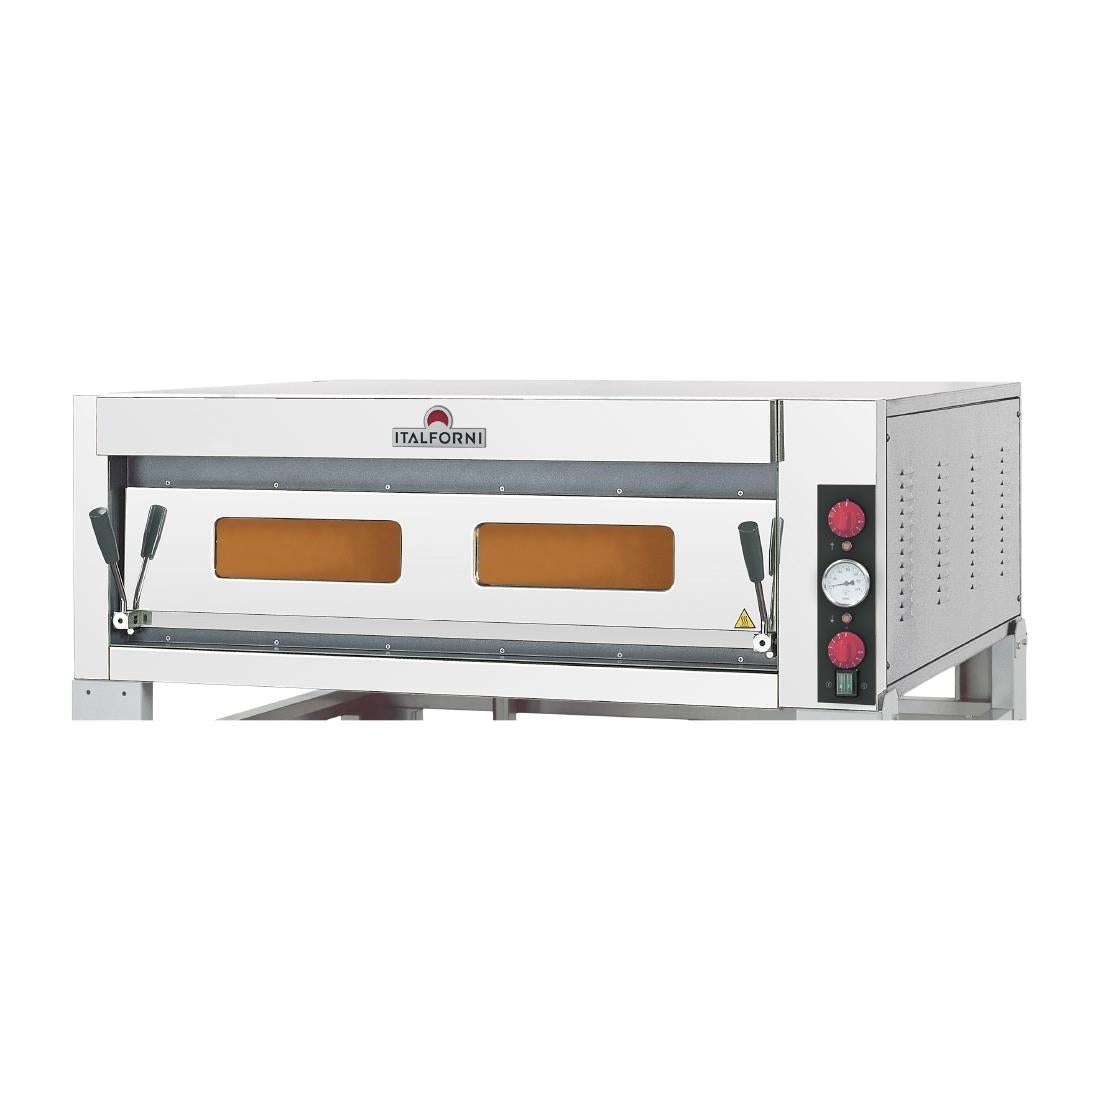 HP644 Italforni TKC1 Single Deck Electric Pizza Oven 9 x 13" Pizzas